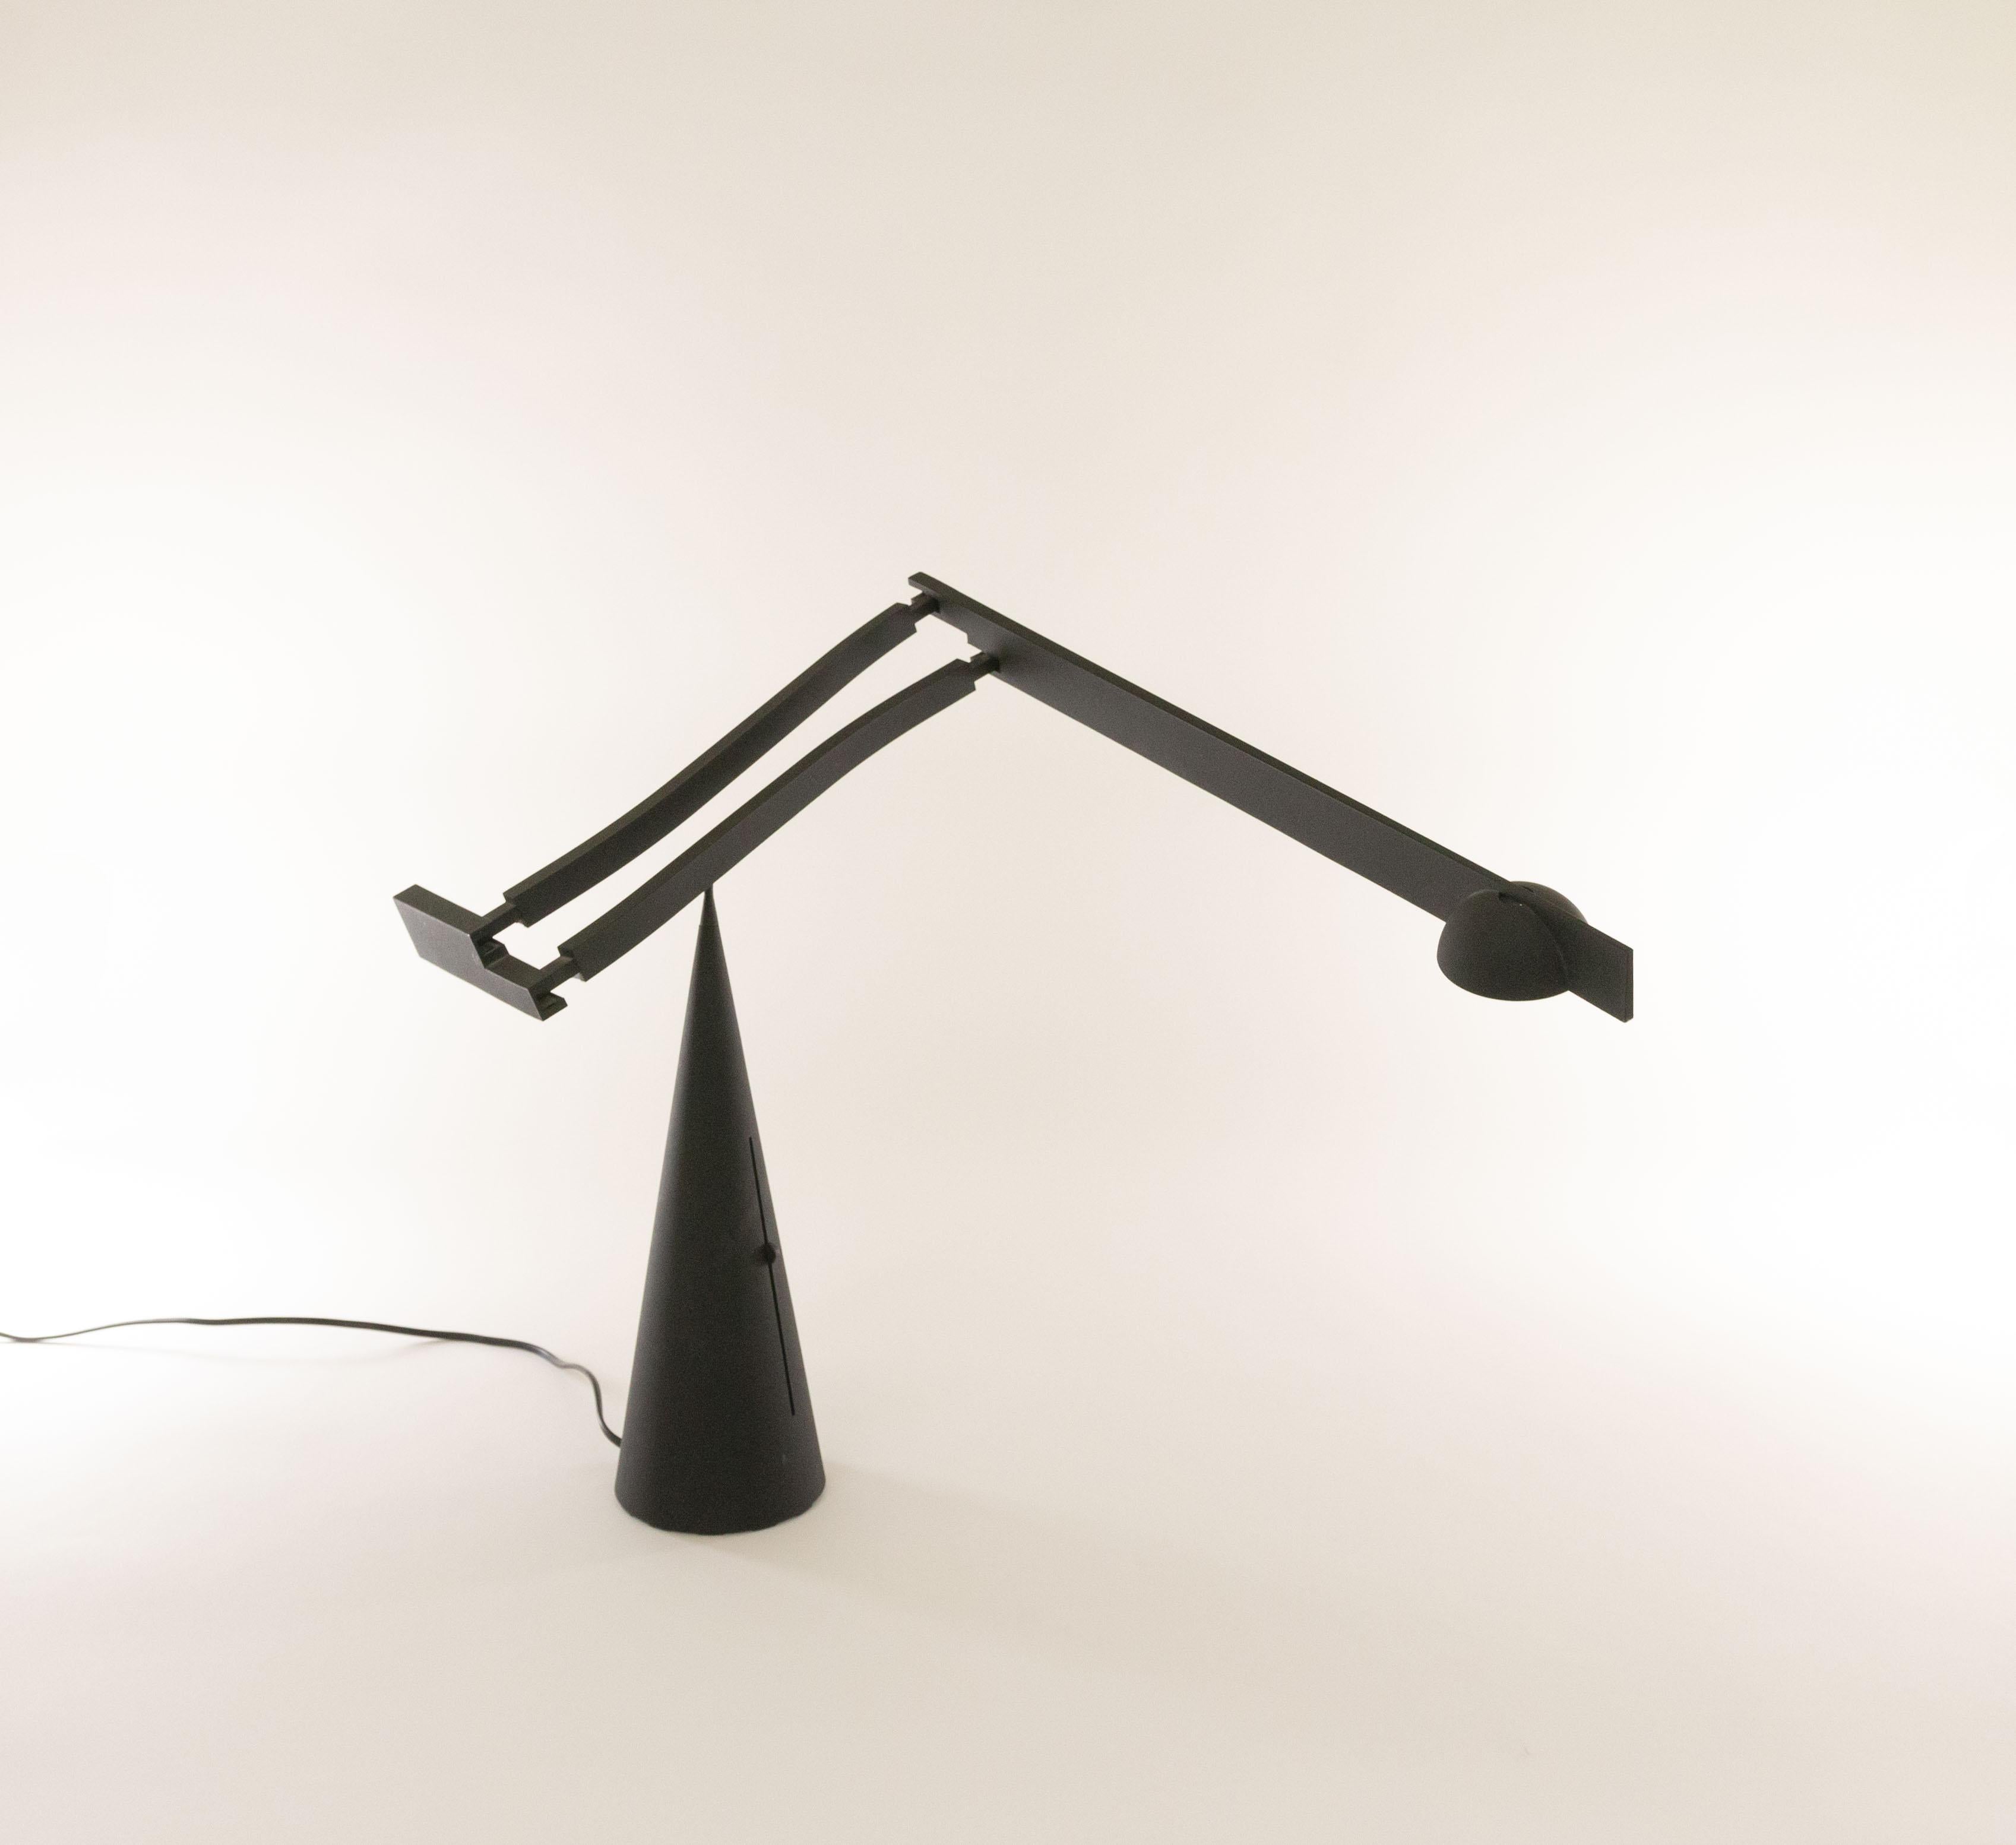 Tischleuchte Tabla von Mario Barbaglia und Marco Colombo für Italiana Luce, 1988 - 1990.

Außergewöhnliches skulpturales Design mit einem verstellbaren und ausziehbaren Arm, der sich anmutig auf der Spitze des konischen Sockels dreht. Der